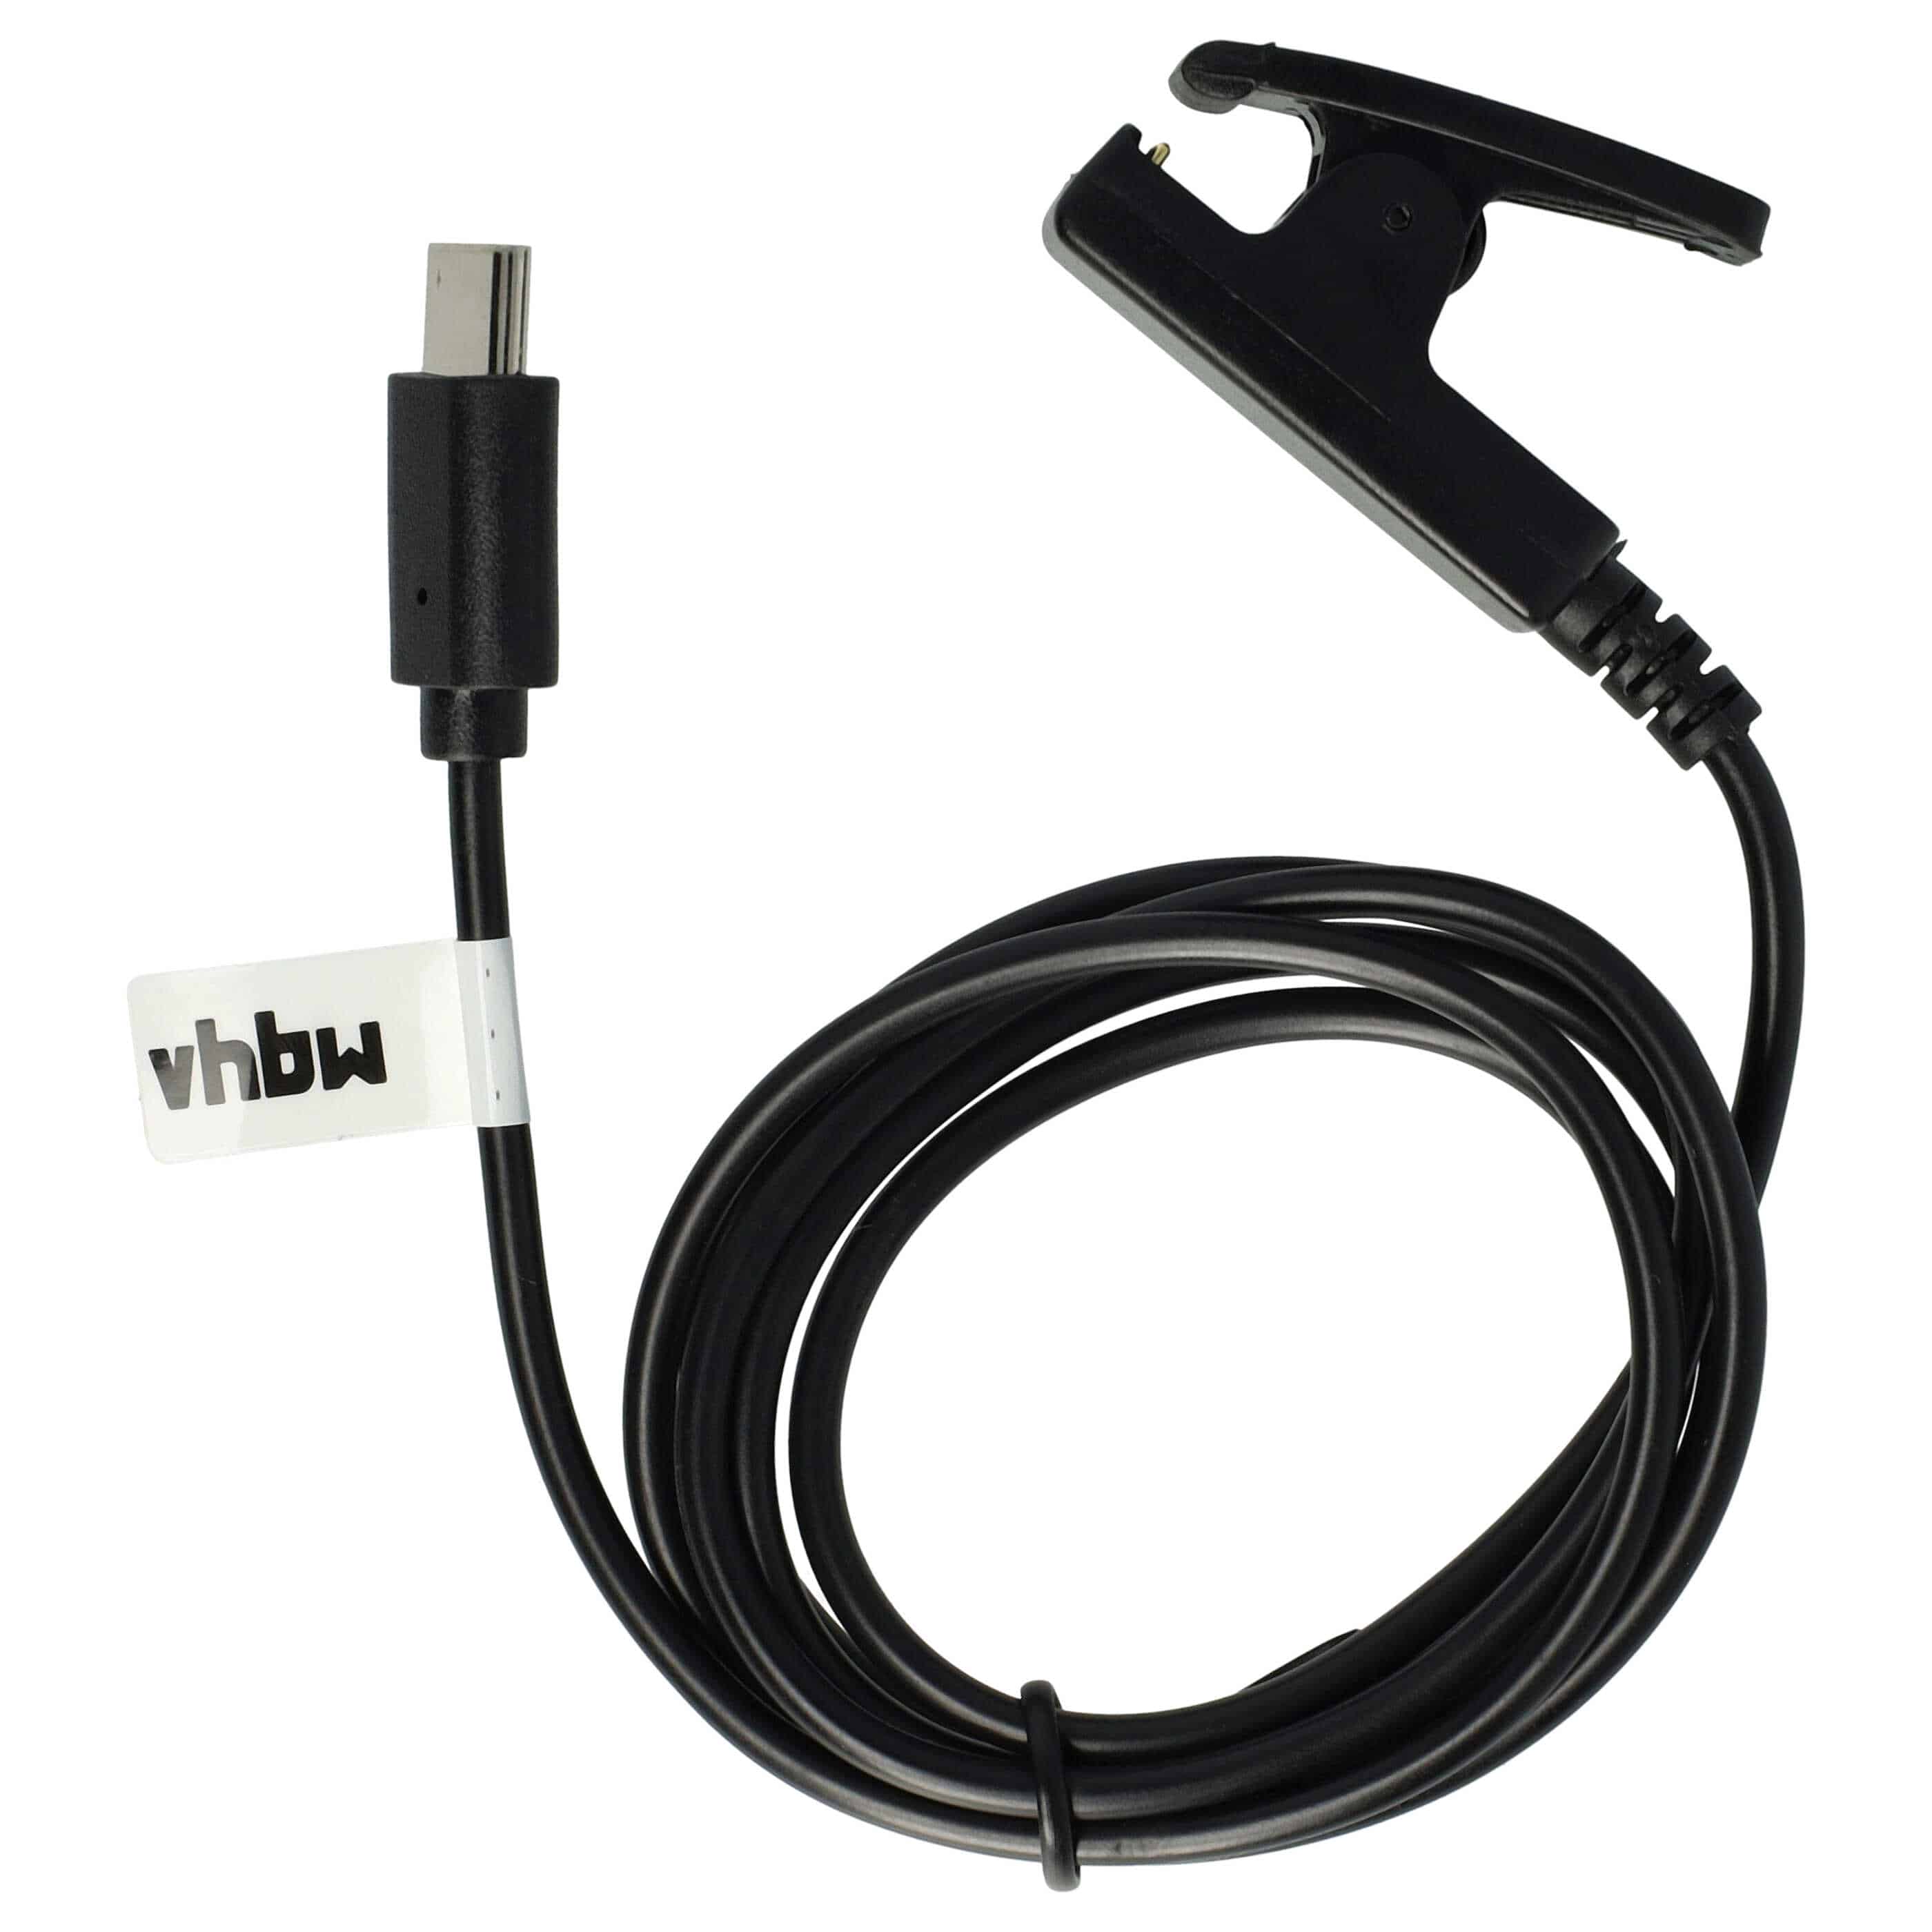 Ladekabel als Ersatz für Garmin 010-13289-00 - 100 cm Kabel, Mit USB-C-Kabel